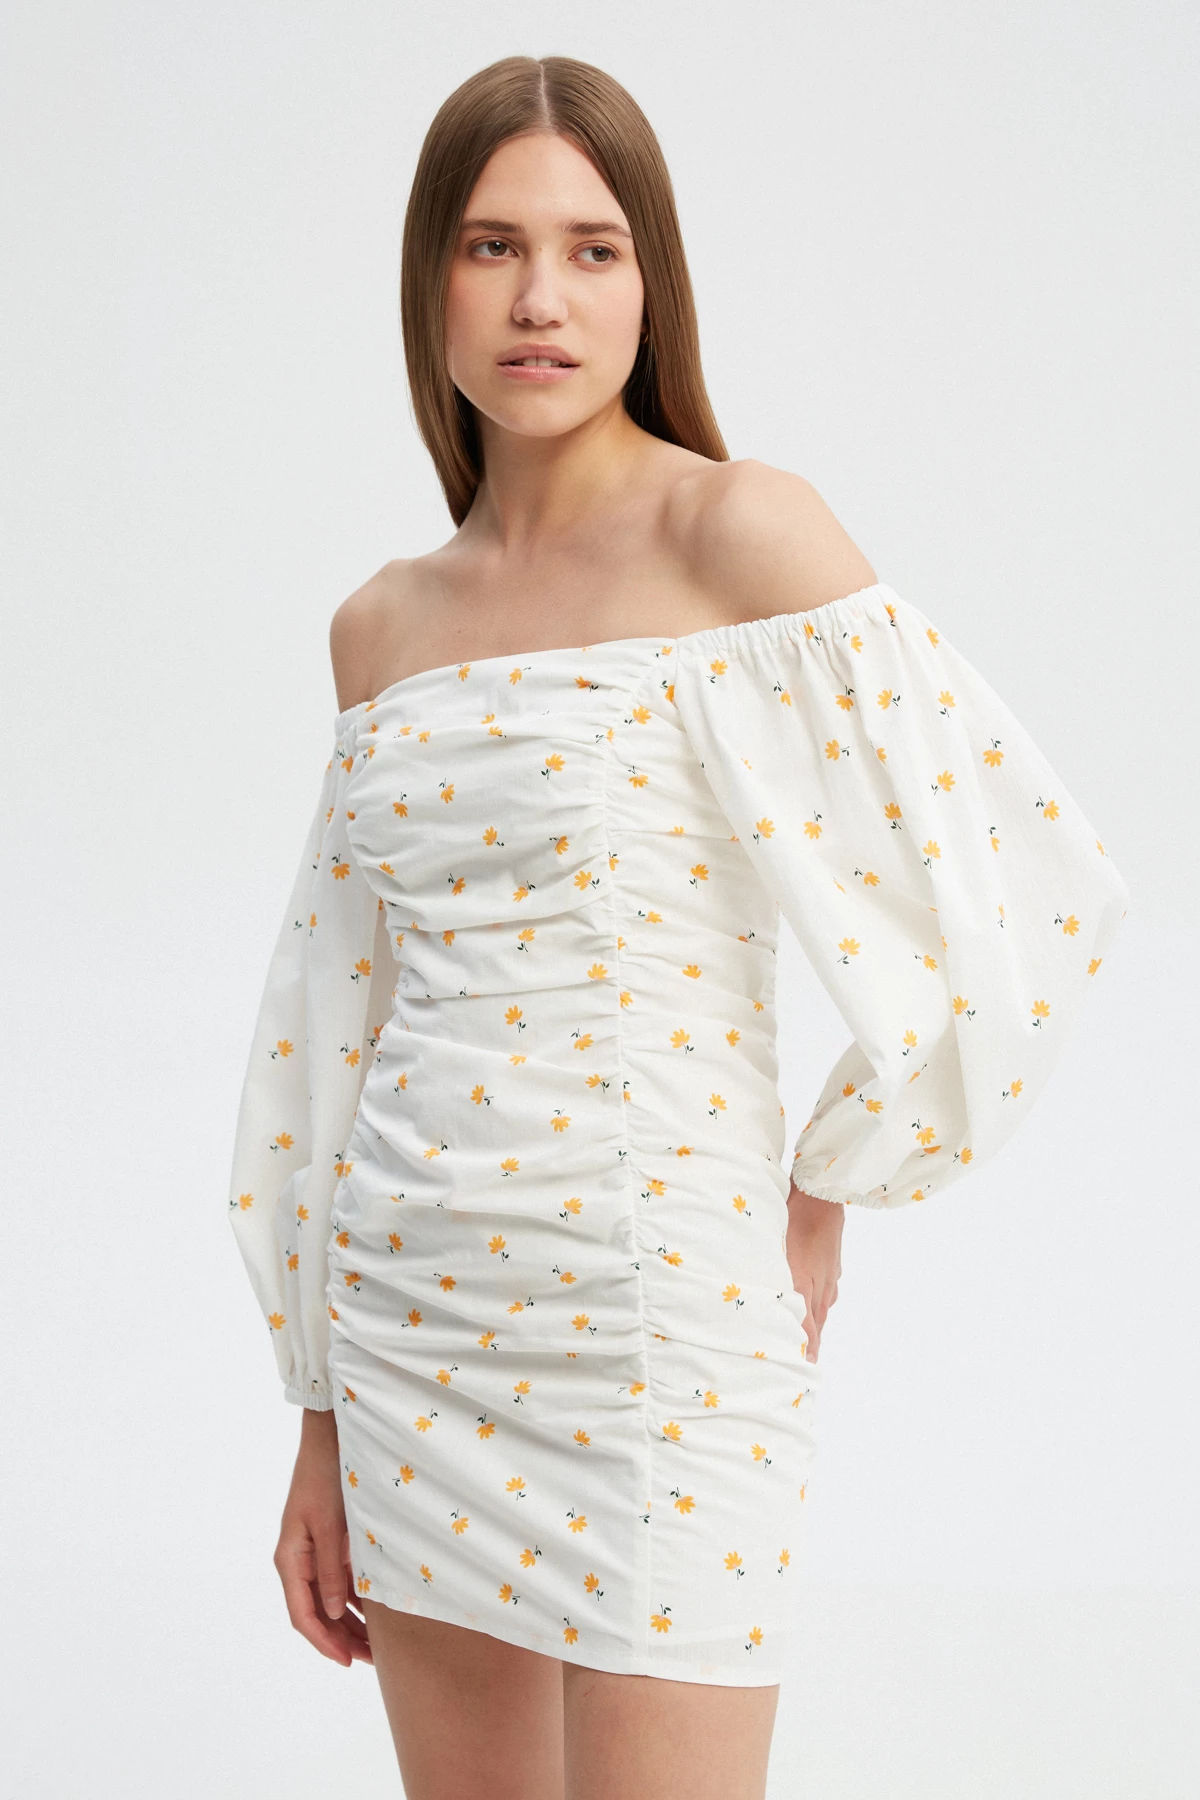 Біла сукня з драпіруванням з бавовни в авторський принт жовті квіти , фото 2